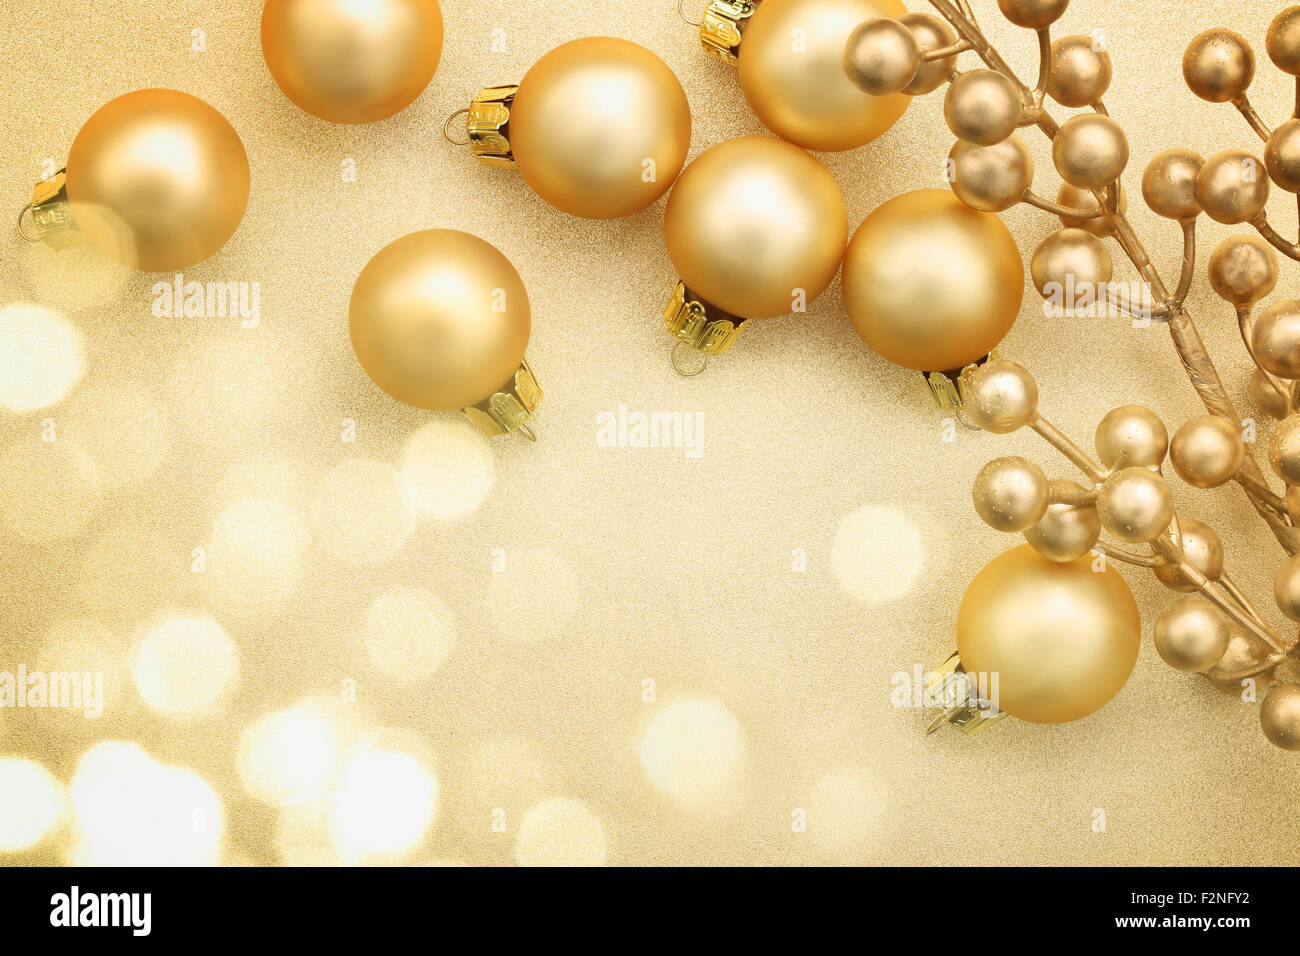 Golden Christmas balls on glitter background Stock Photo